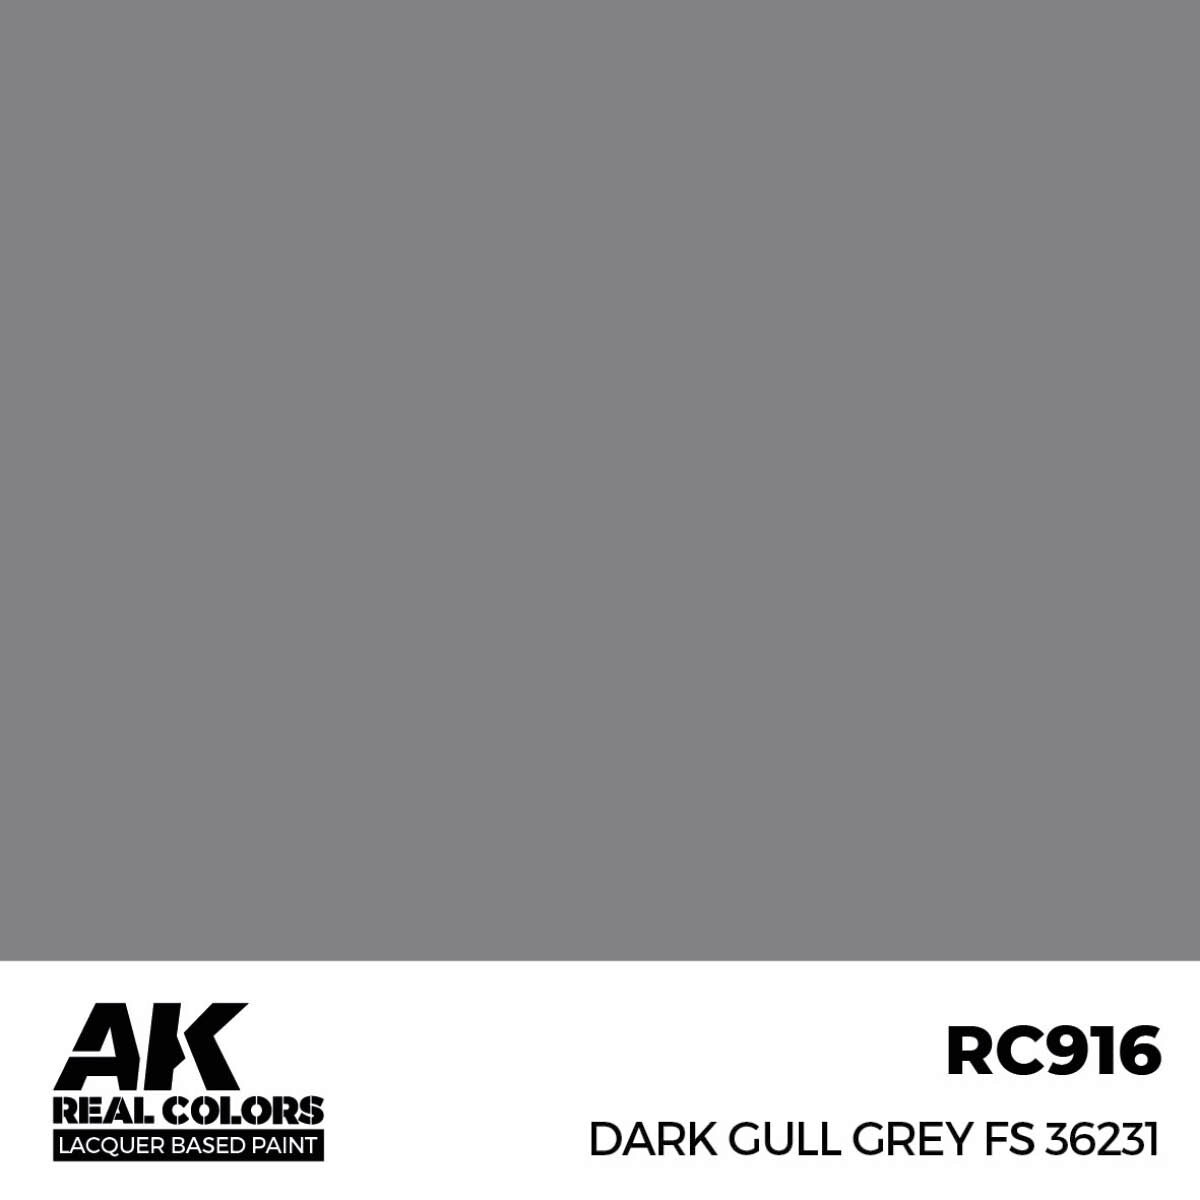 AK RC916 Real Colors Dark Gull Grey FS 36231 17 ml.